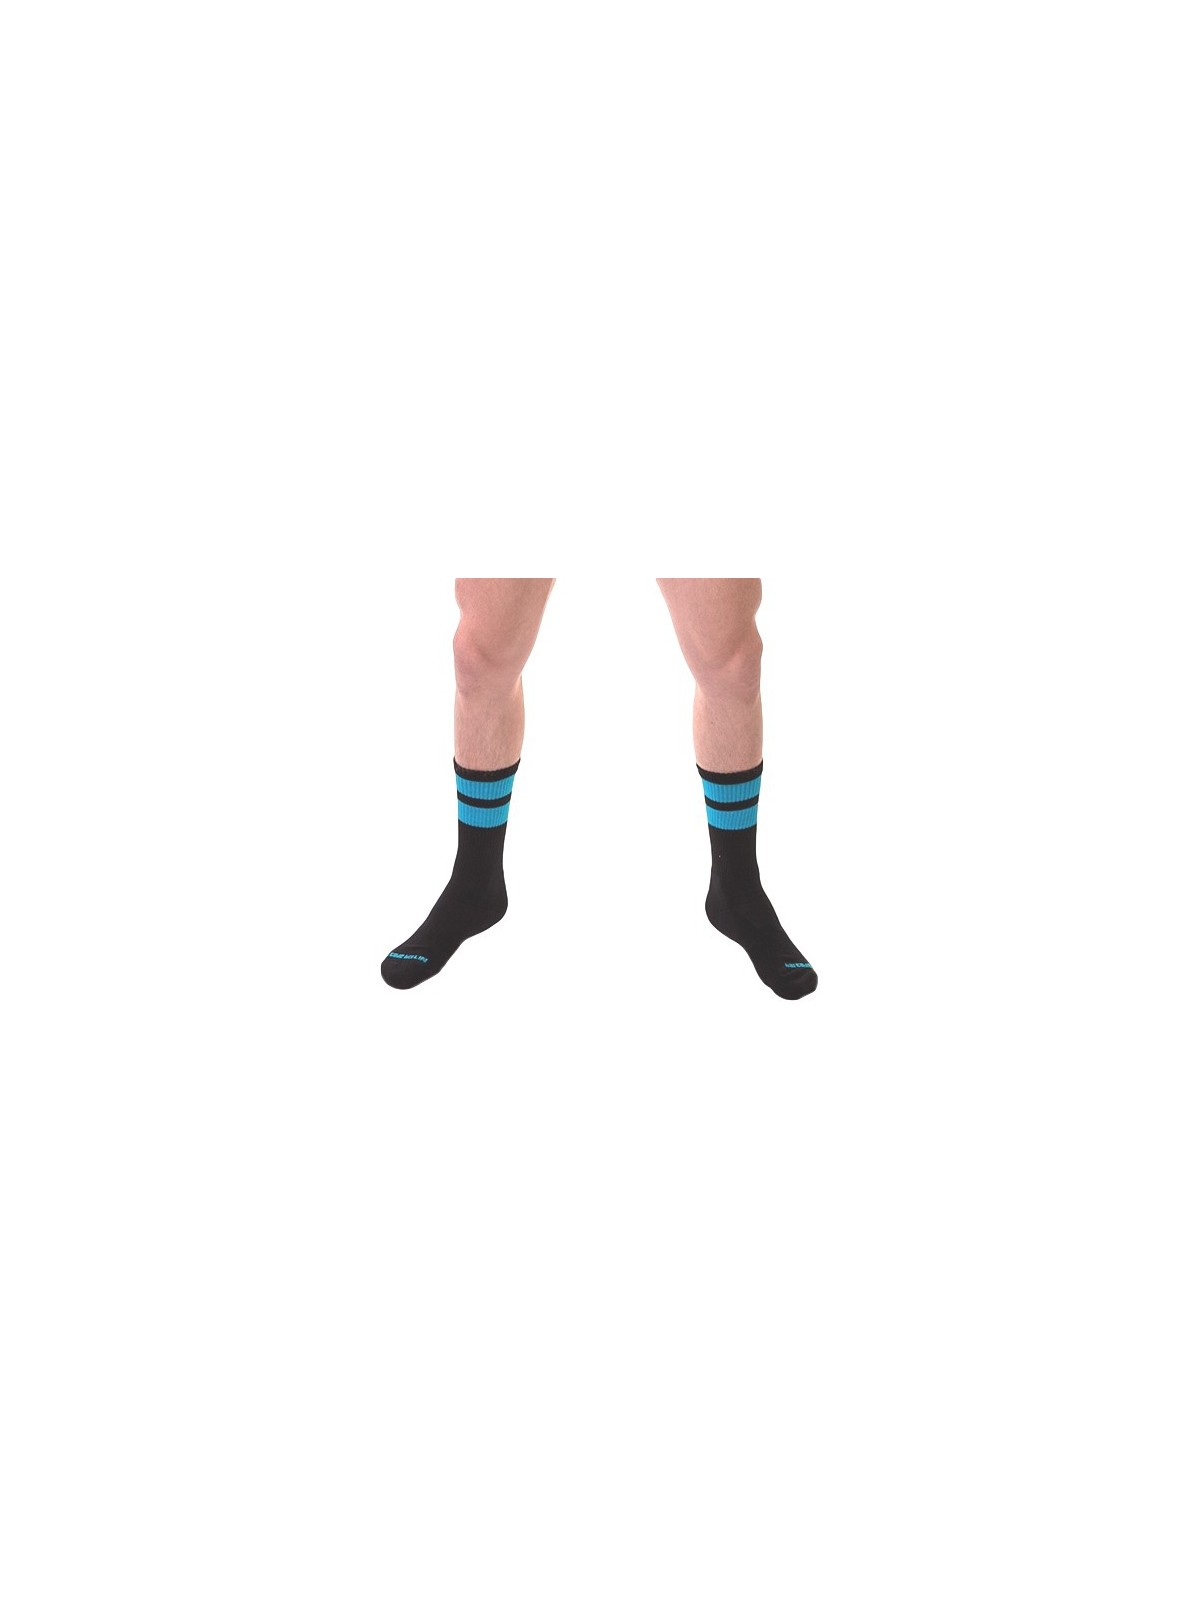 imports Chaussettes Gym Socks Noir-Bleu fluo Les chaussettes noires GYM SOCKS sont conçues par la marque Barcode Berlin. Elles o